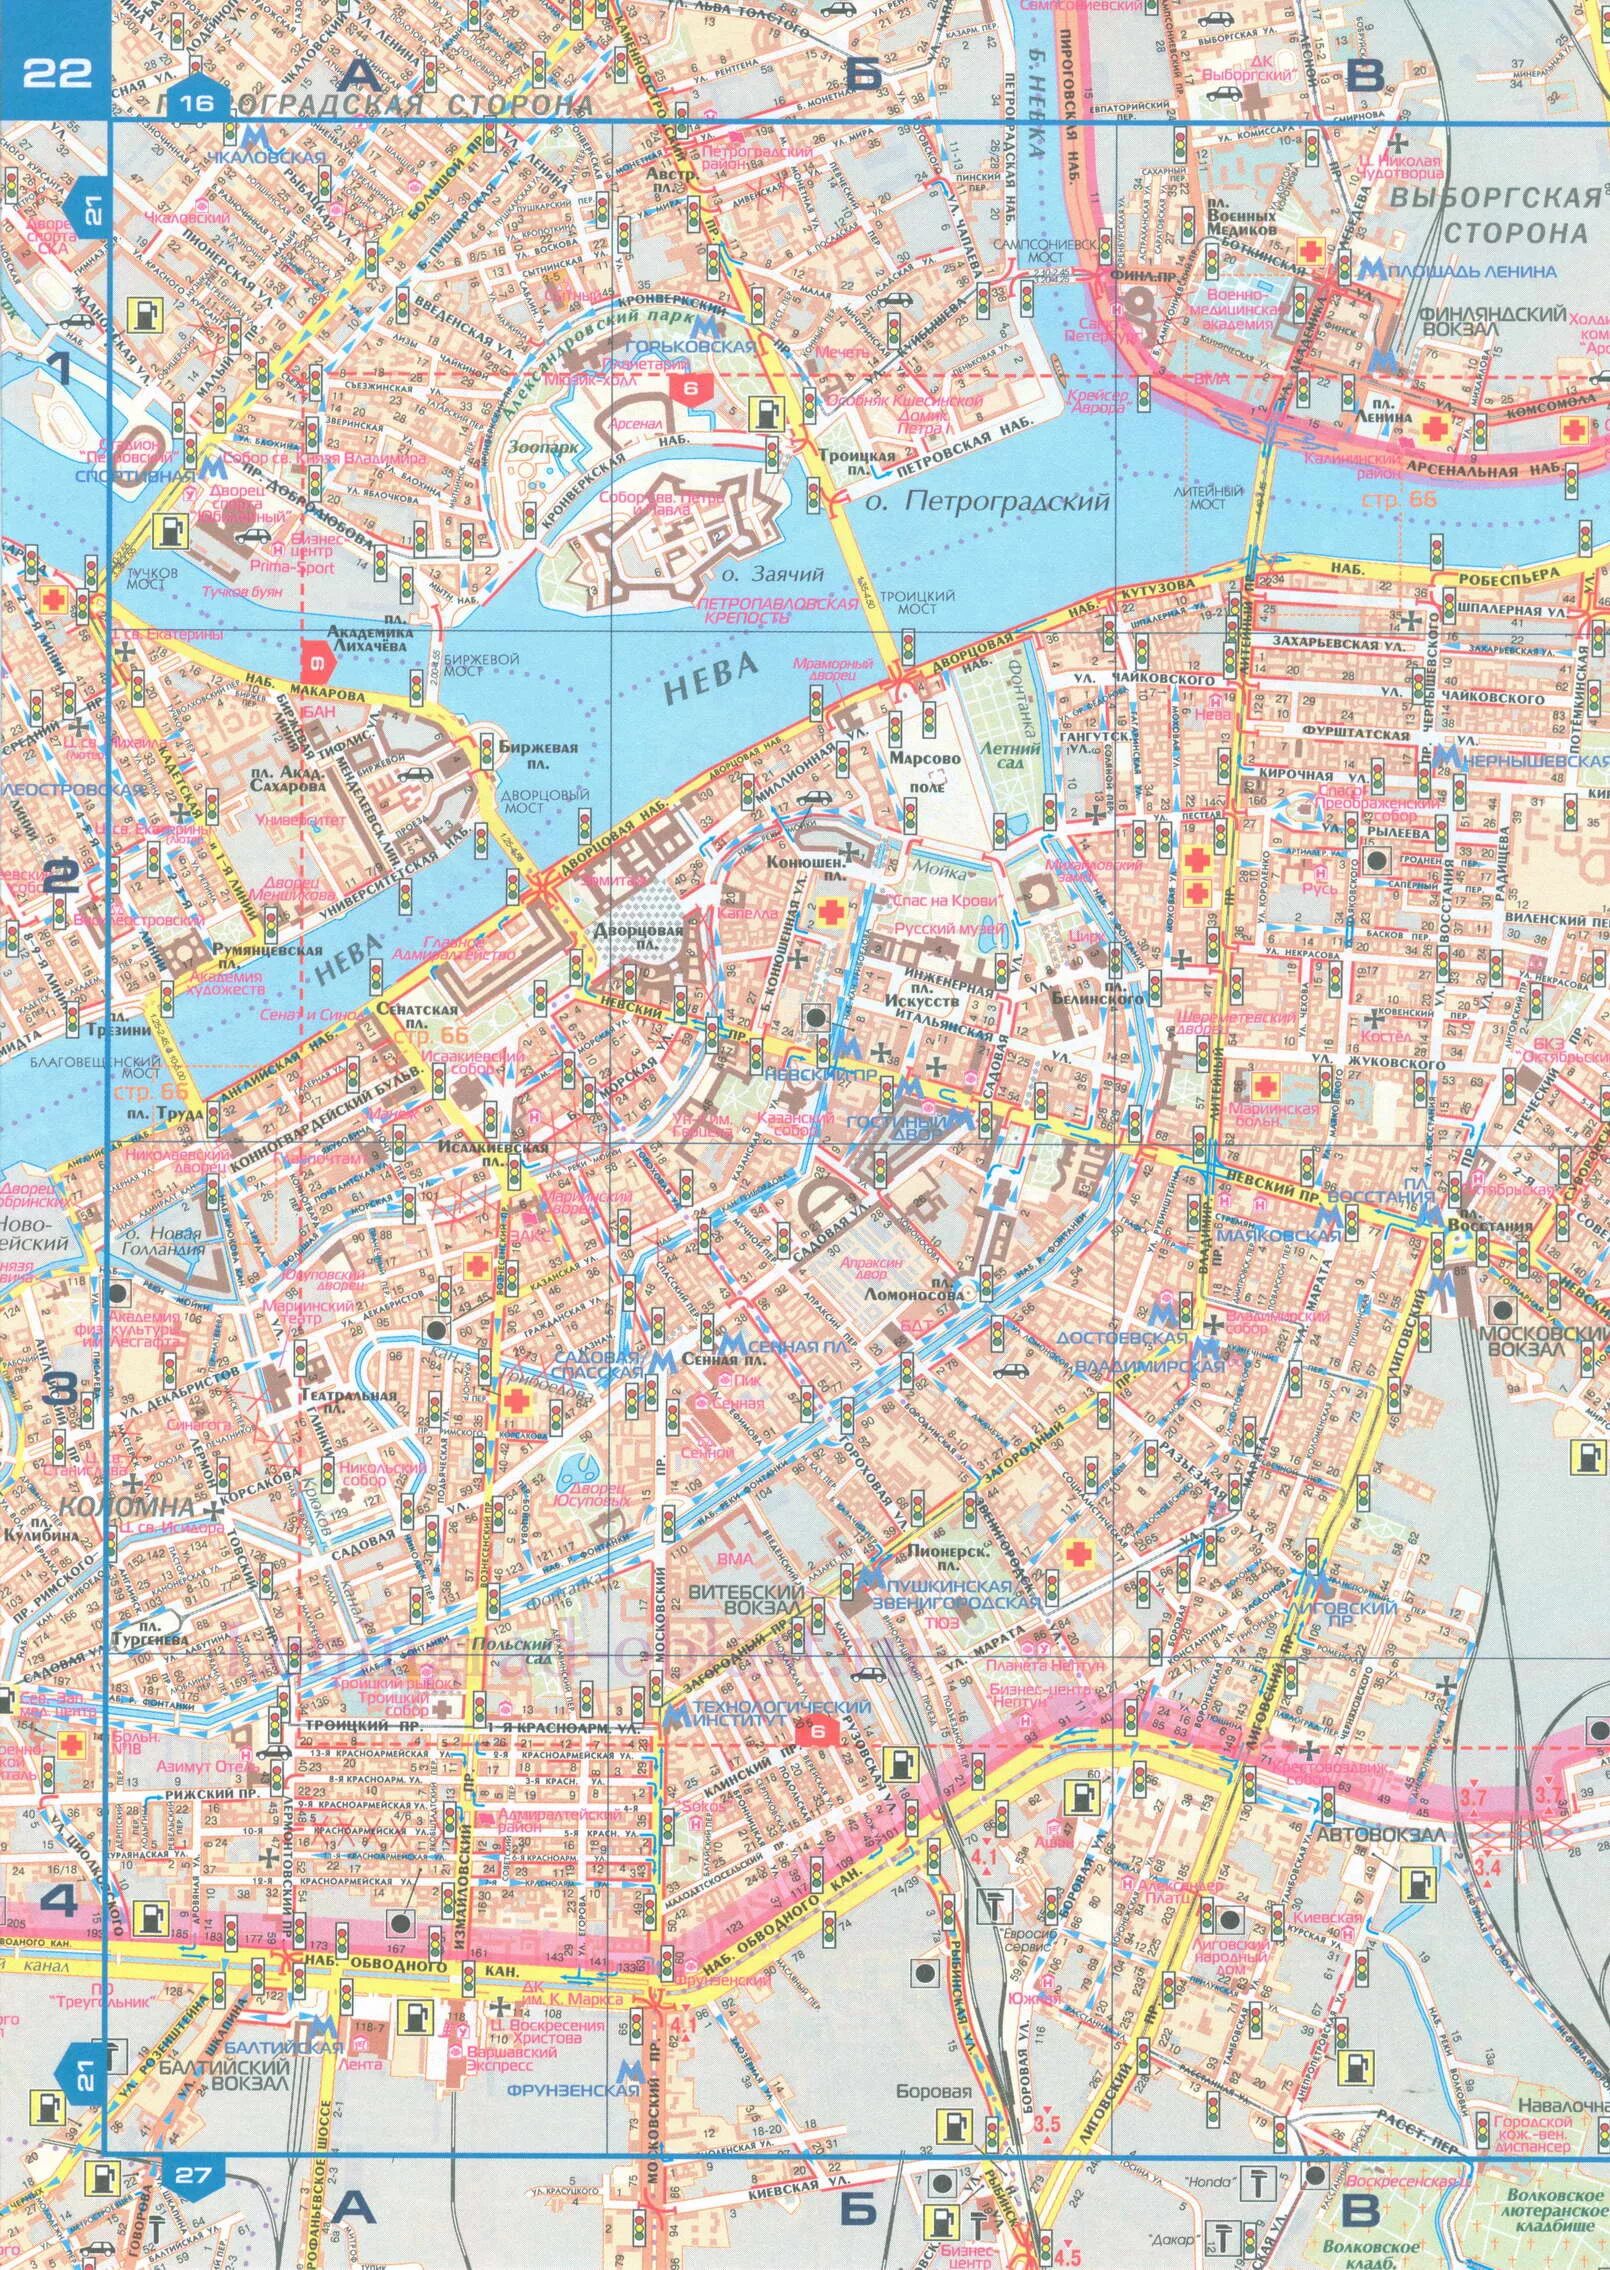 Схема Невского проспекта Санкт-Петербурга. Карта невского пр